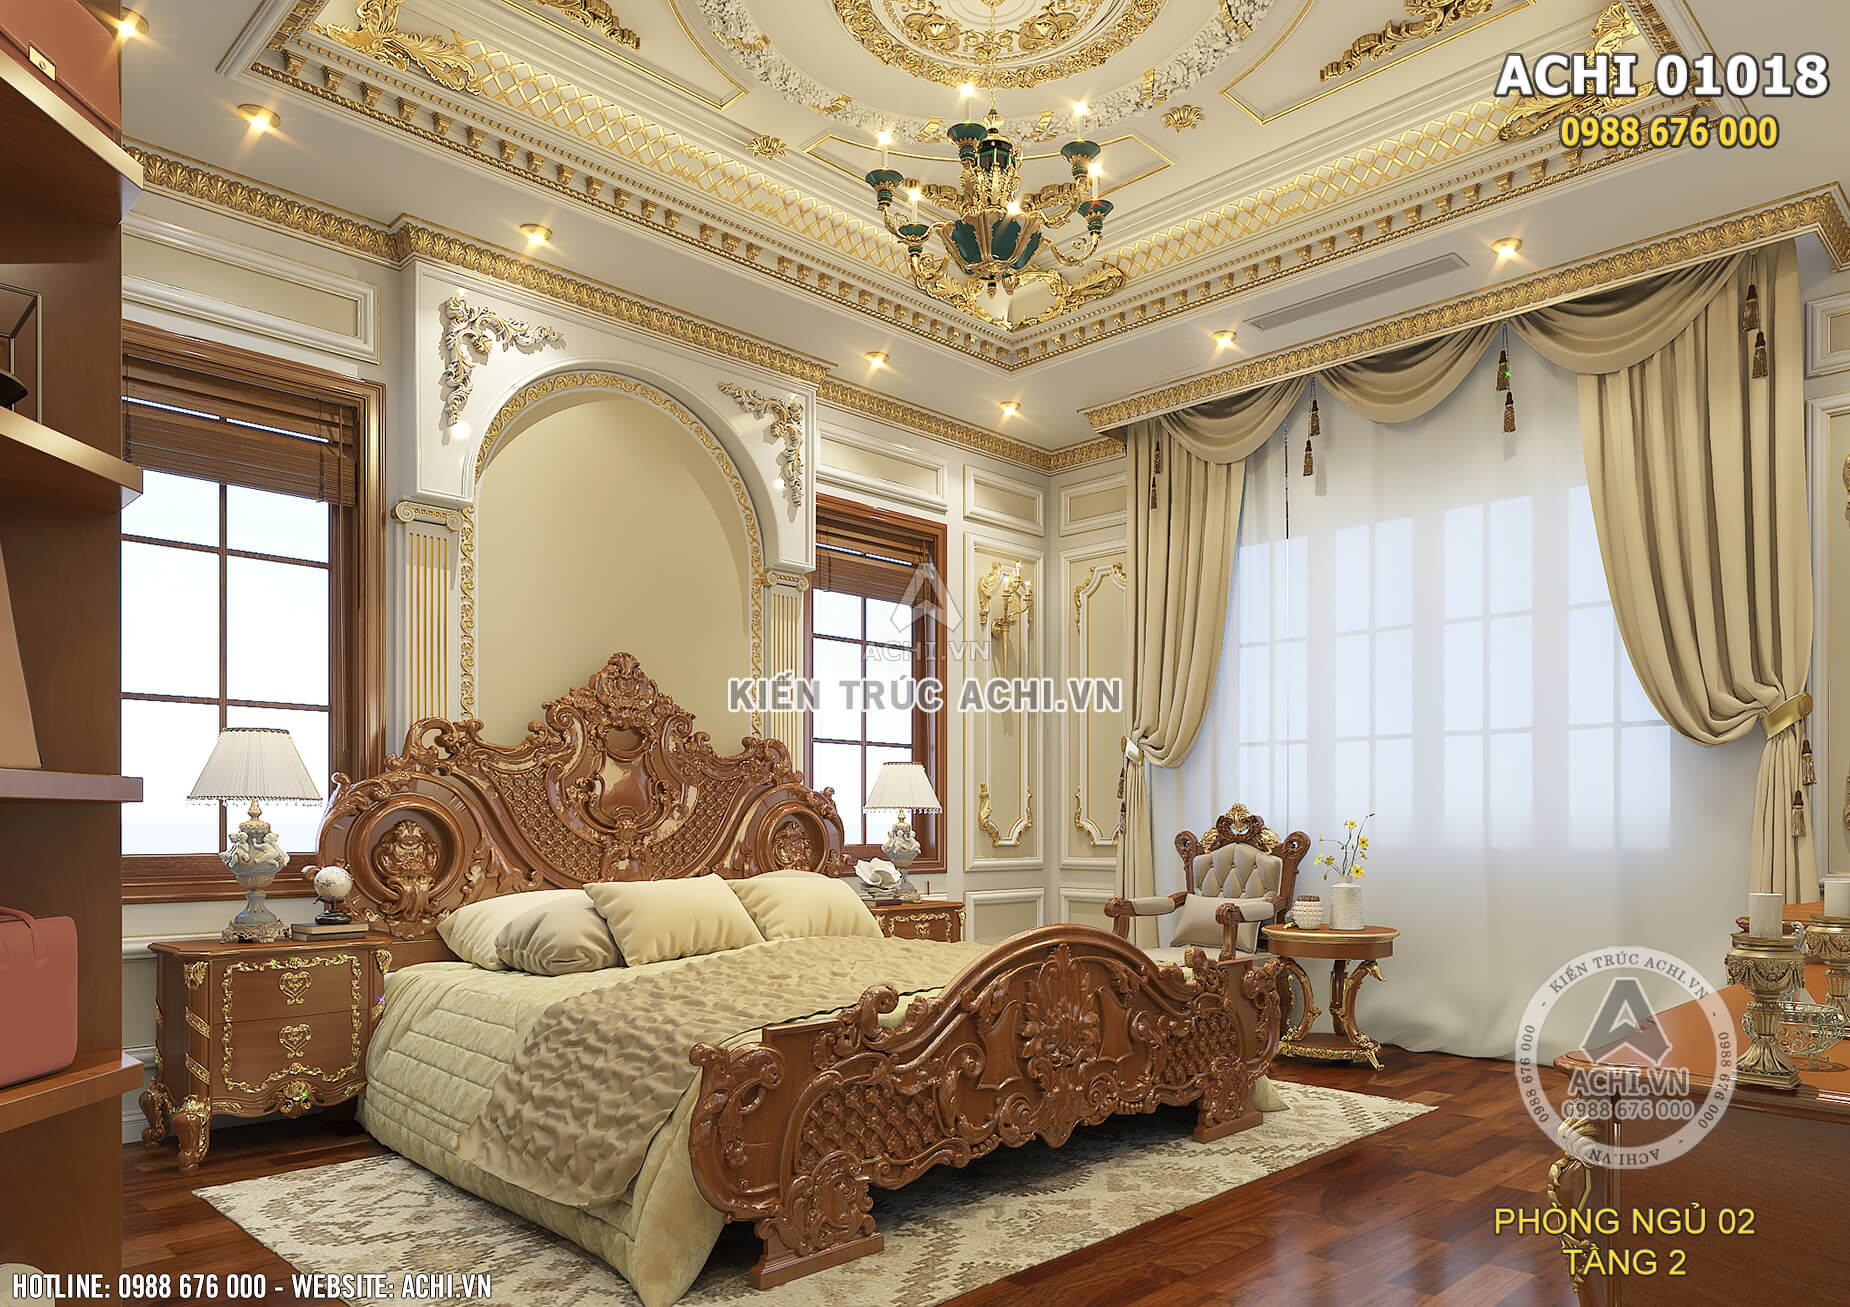 Chiếc giường ngủ bằng gỗ tự nhiên cao cấp được điêu khắc cầu kỳ, tinh xảo là điểm nhấn của không gian nội thất phòng ngủ